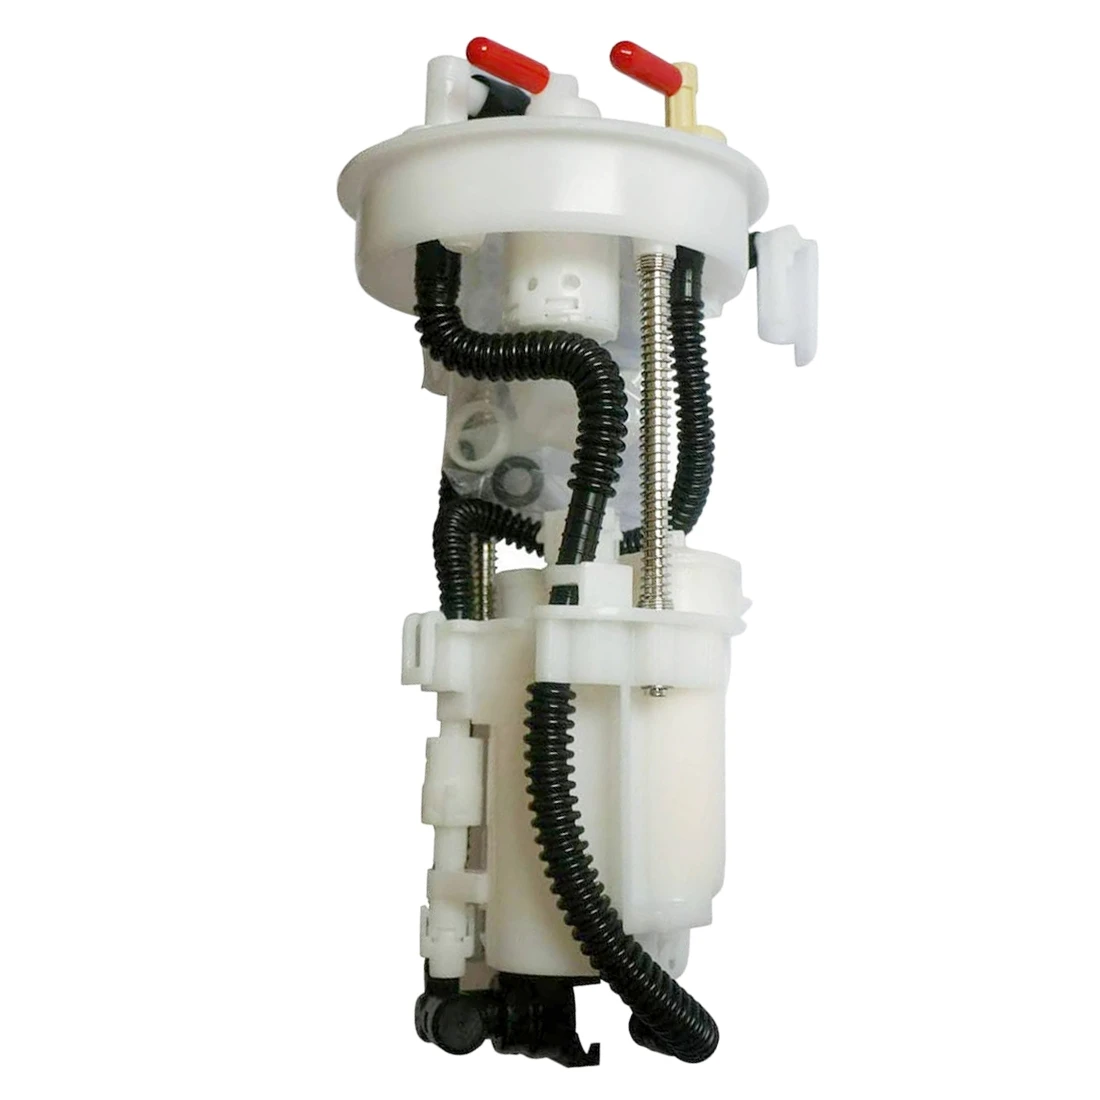 

Electric Fuel Pump embly Fuel Filter Fit for Honda Fit Saloon City 1.3L/1.5L Jazz 1.2L/1.4L 2002-2008 16010-SAA-000